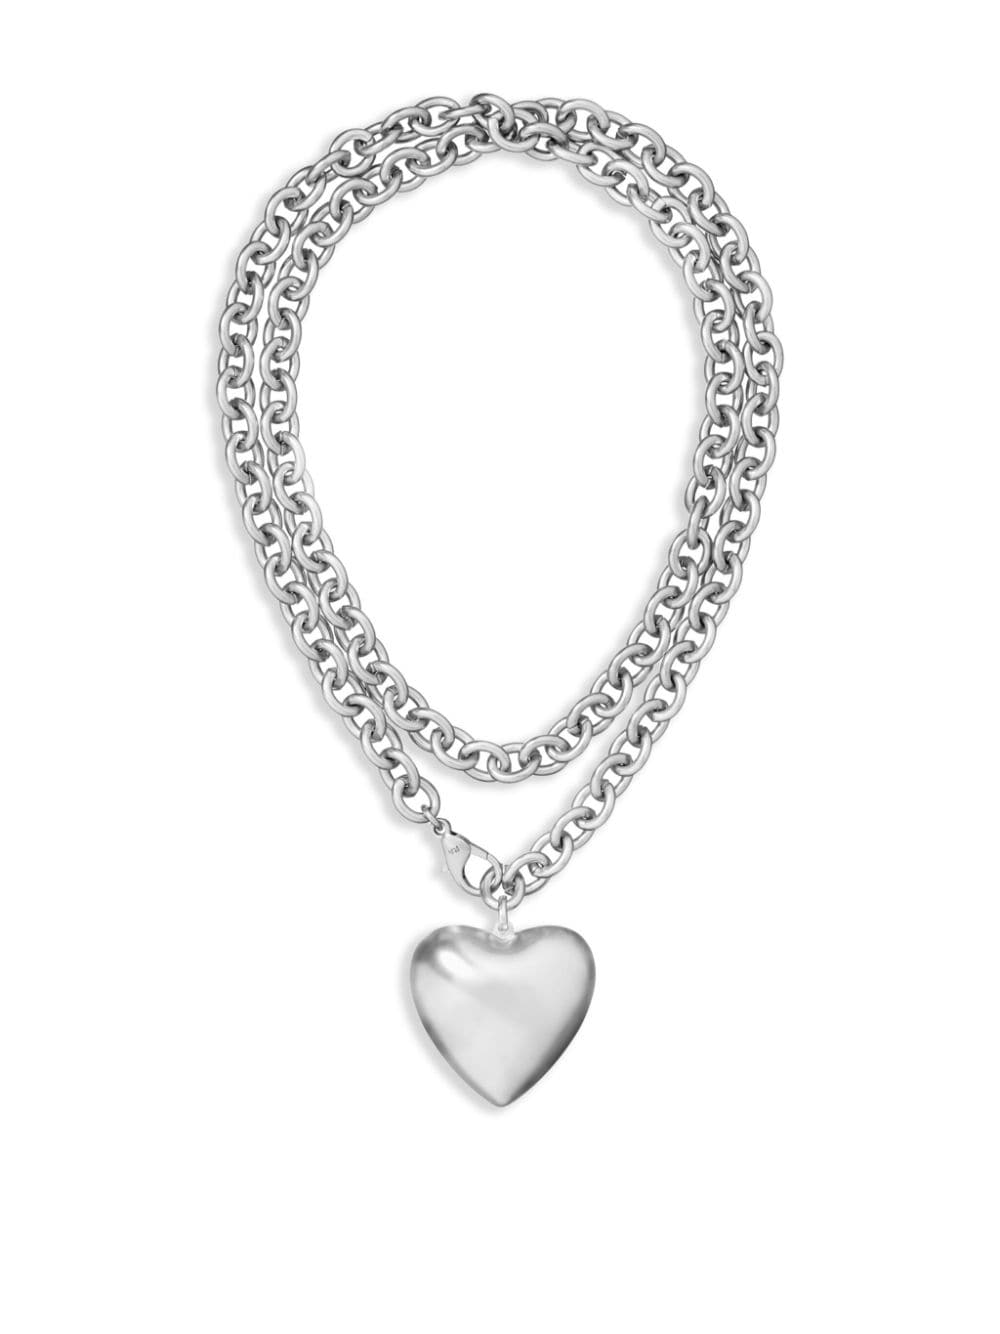 Roxanne Assoulin The Puffy Heart necklace - Silver von Roxanne Assoulin